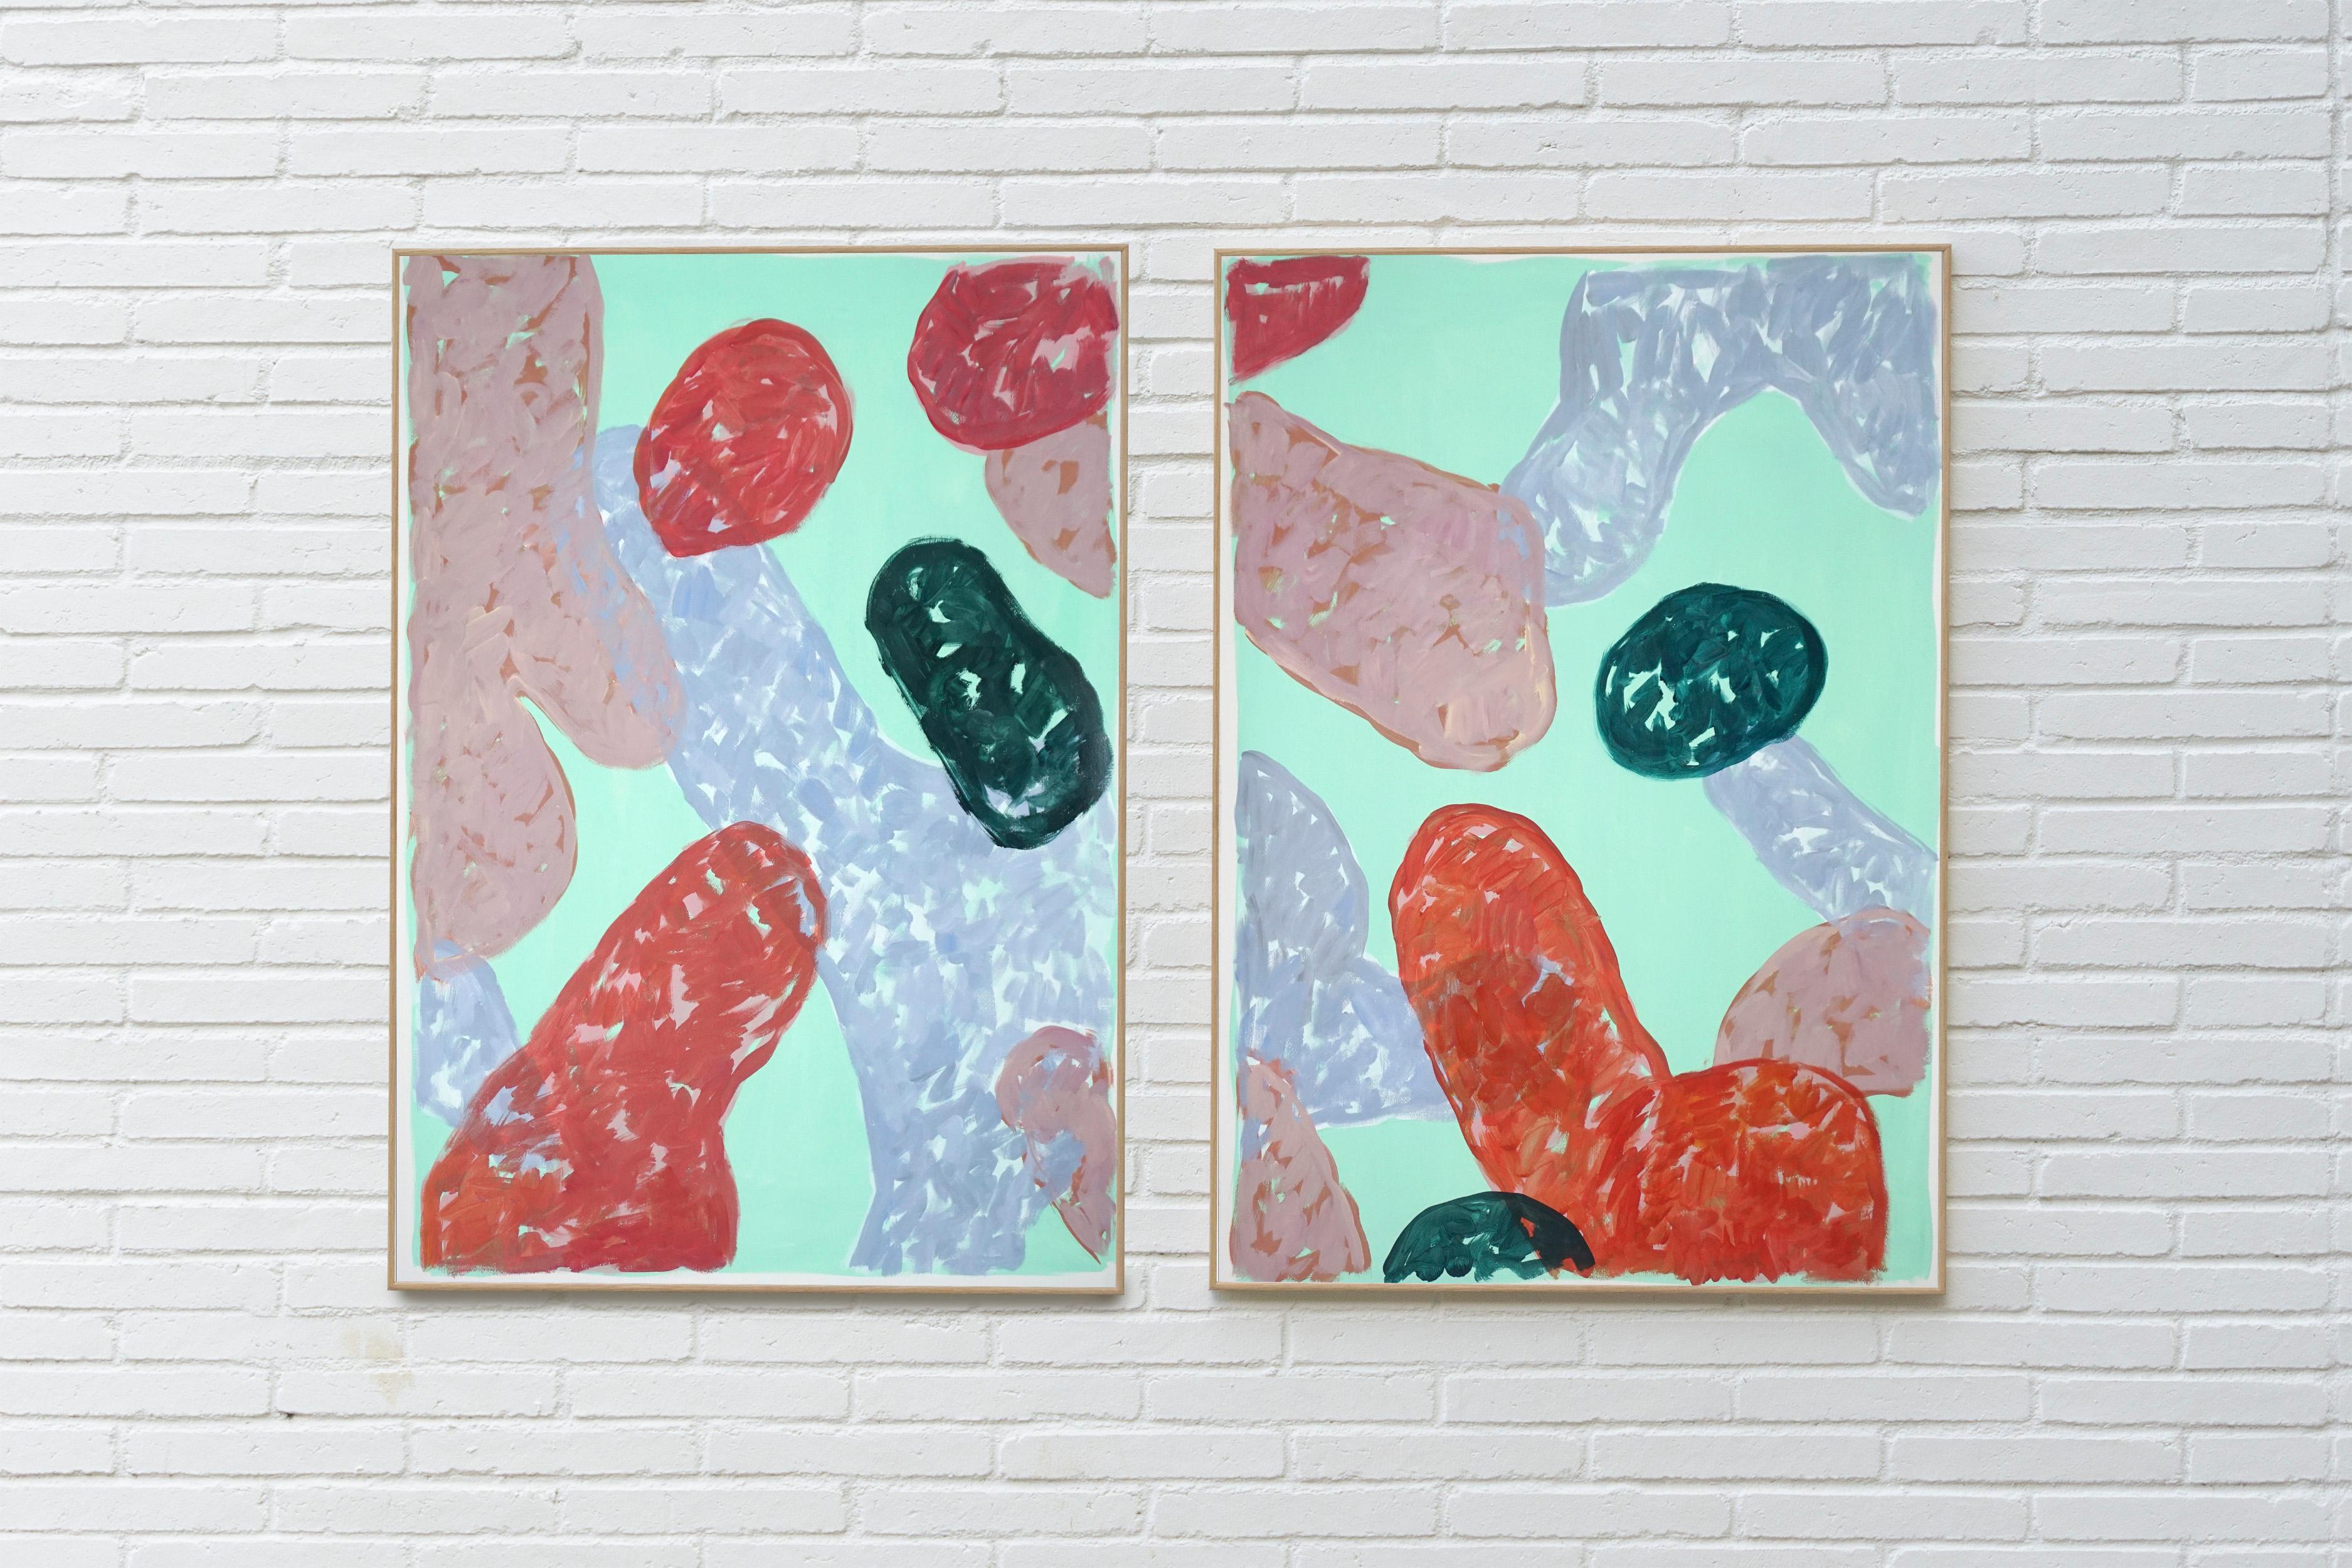 Abstraktes Stillleben auf Papier aus dem späten Sommer, warme pastellfarbene Töne, 2021 (Grau), Still-Life Painting, von Natalia Roman